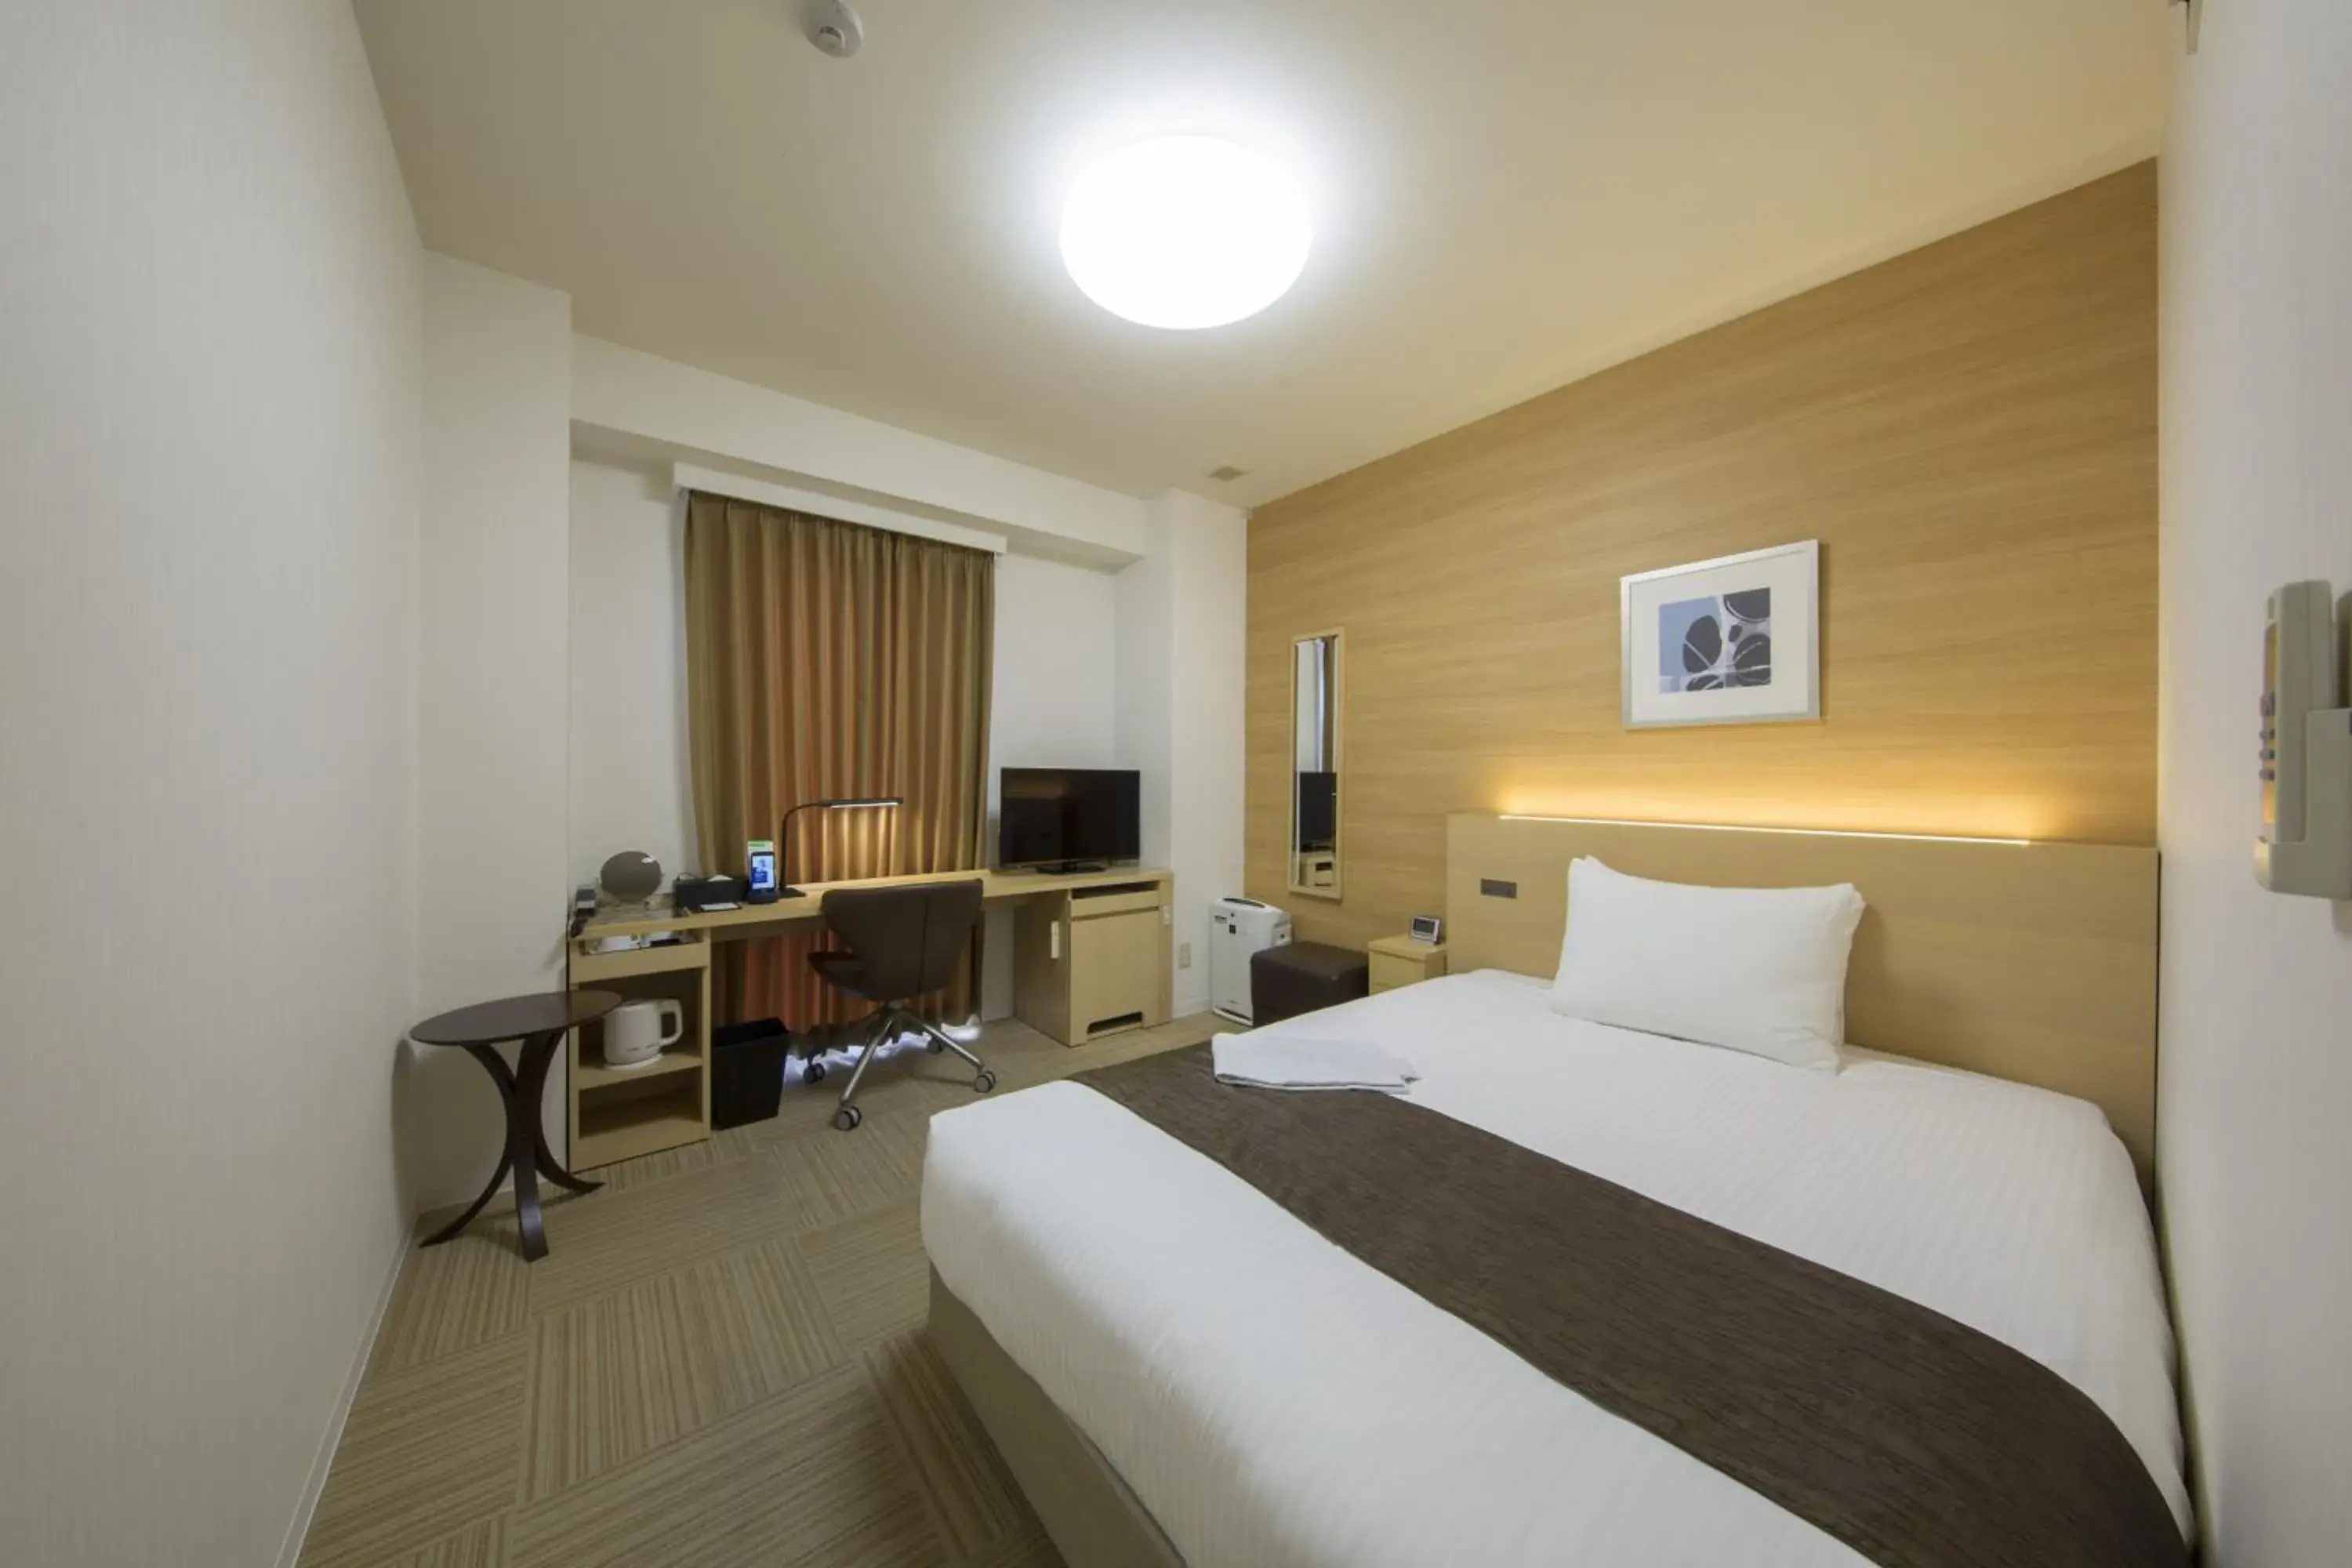 Area and facilities, Bed in Shizutetsu Hotel Prezio Shizuoka Ekinan